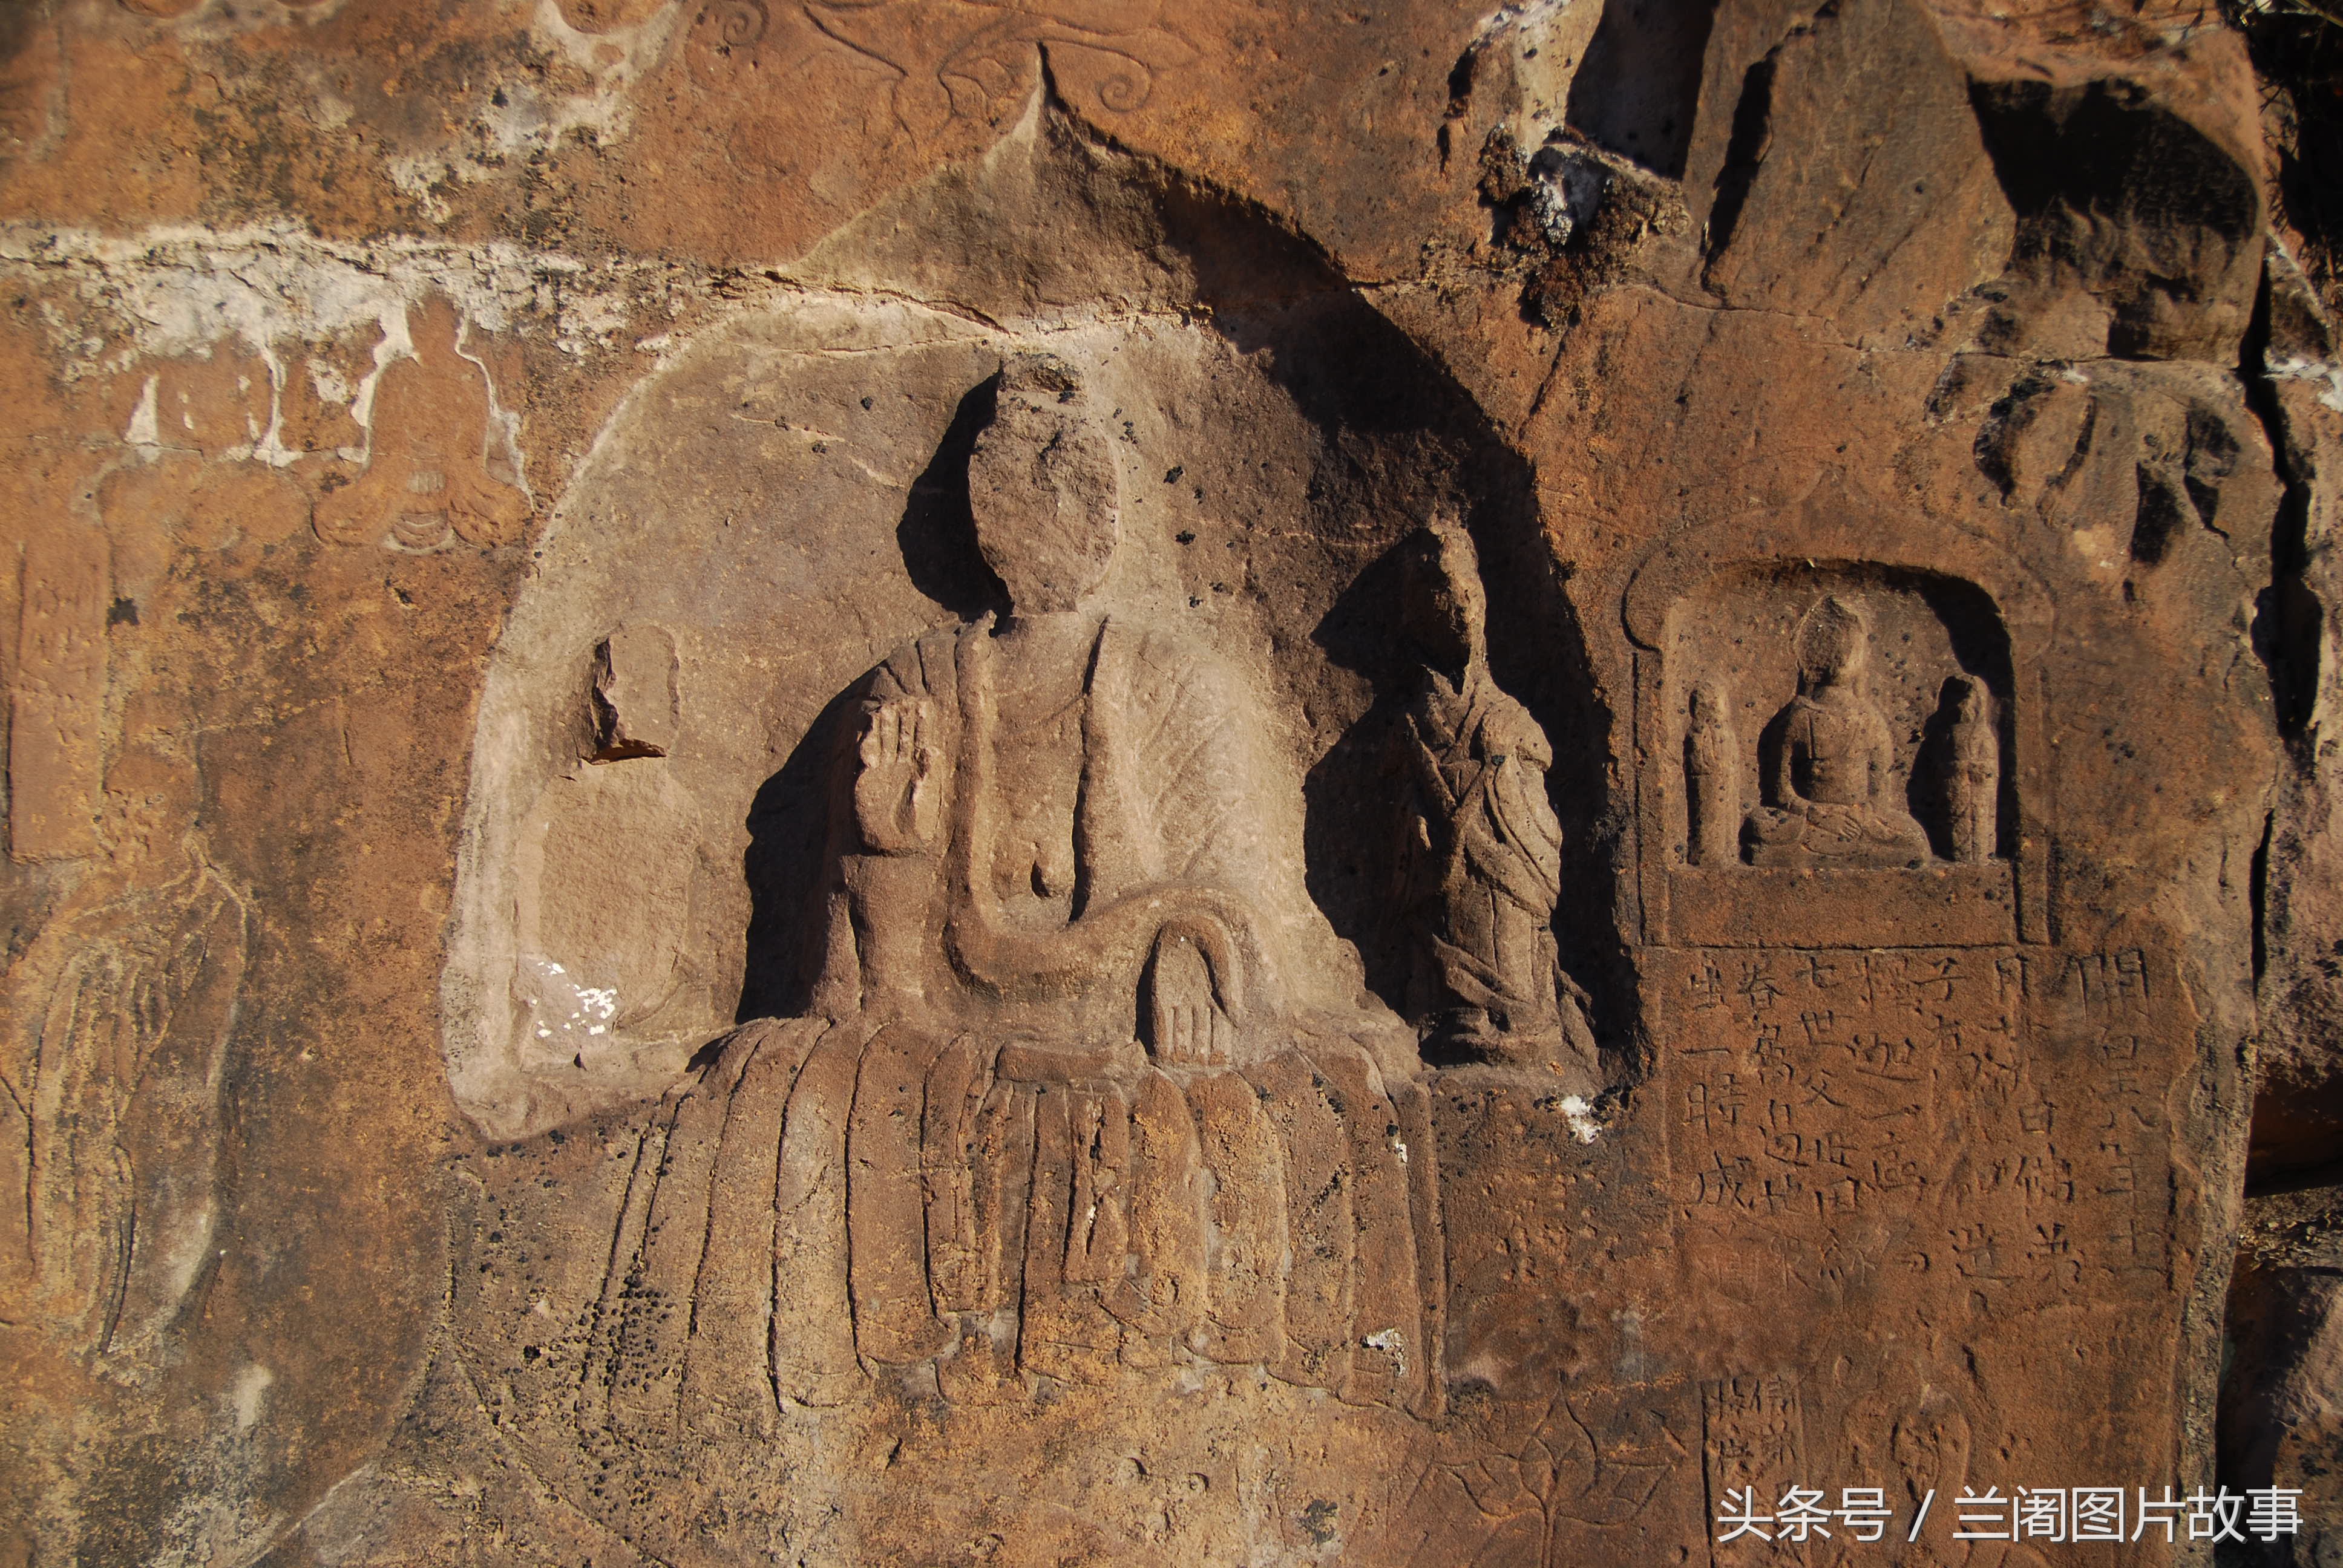 中国早期的佛教刻经之一，刻有《观世音菩萨普门品》的摩崖造像